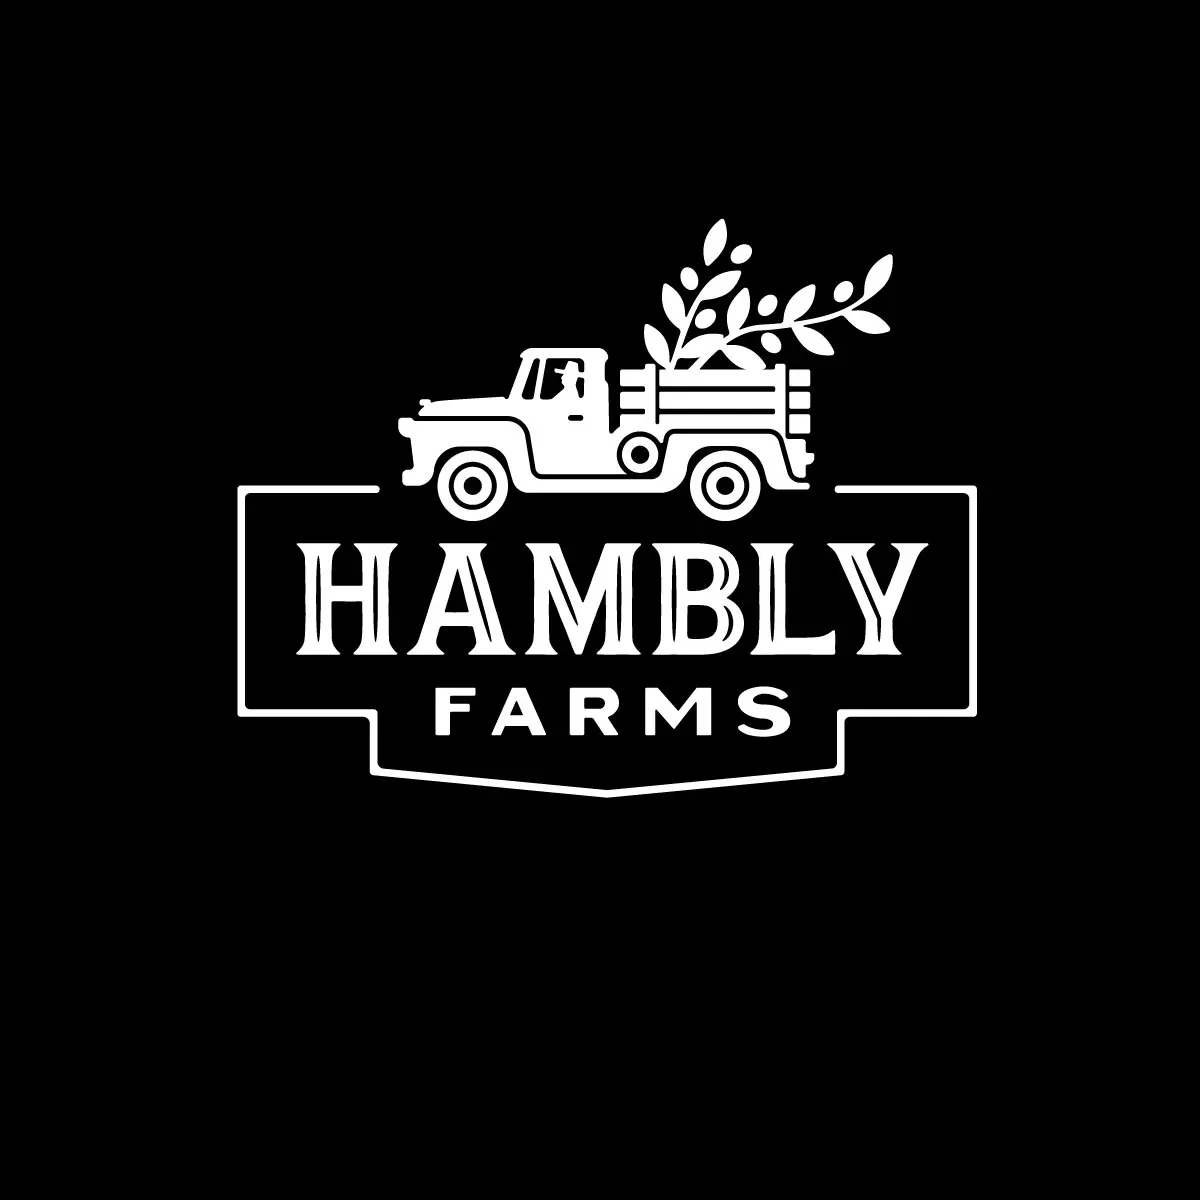 Hambly Farms